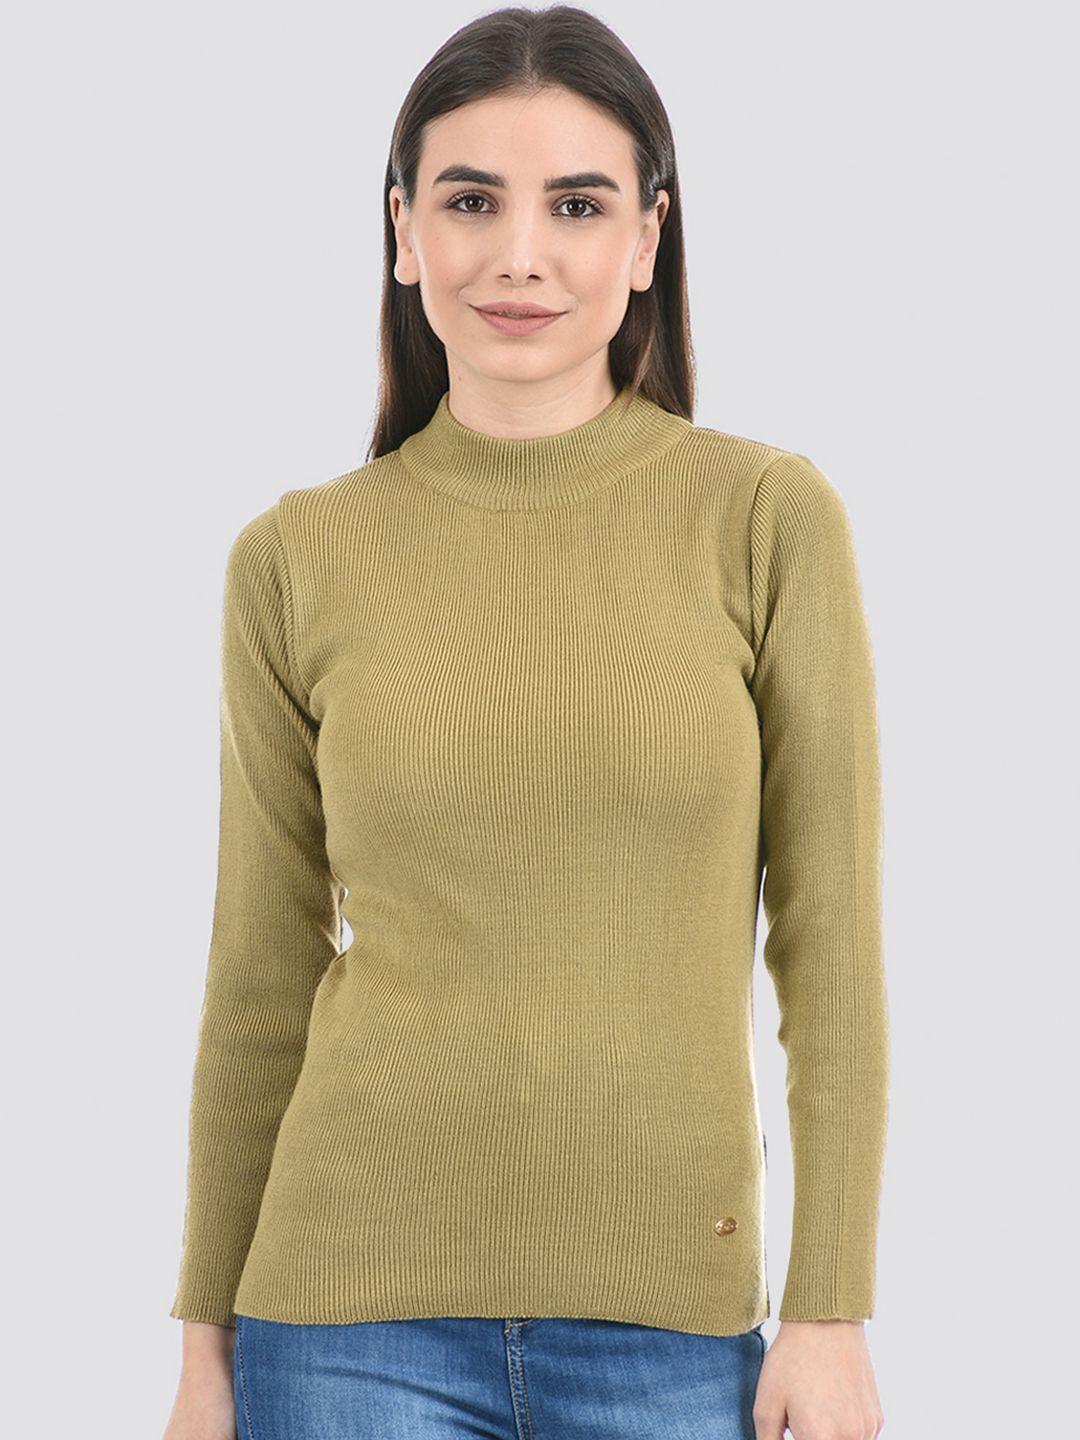 cloak & decker by monte carlo women acrylic pullover sweater